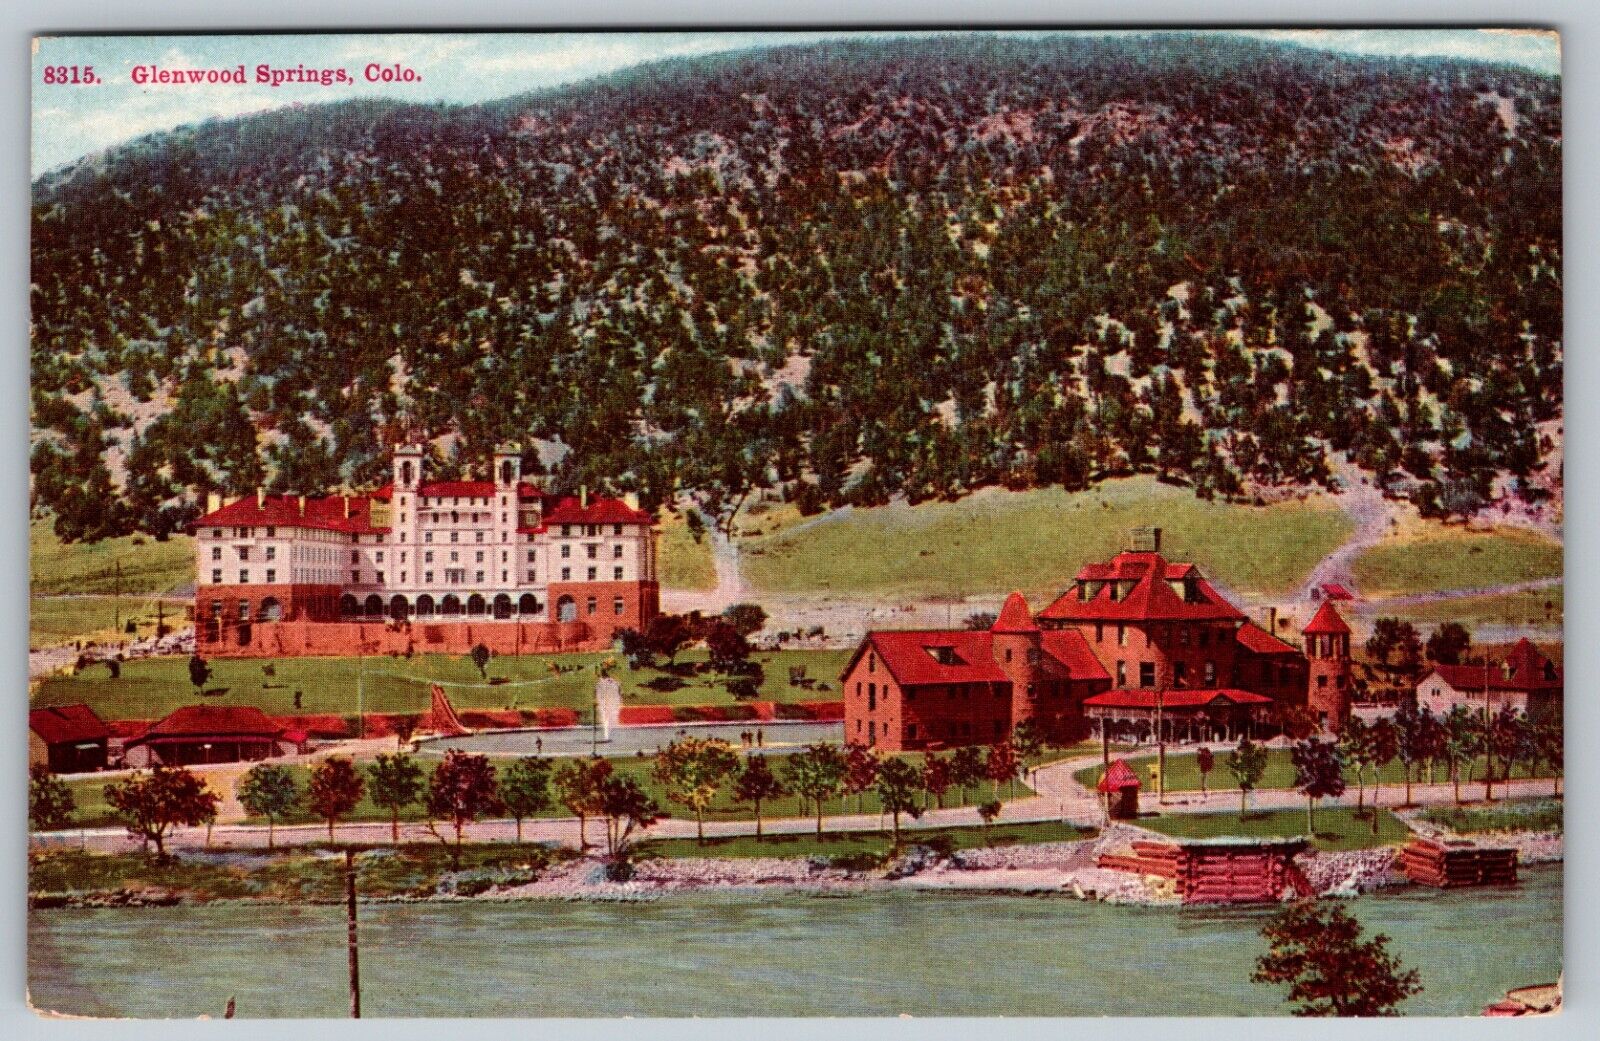 Hotel Colorado Glenwood Springs Colorado Aerial View 1916 Vintage Postcard